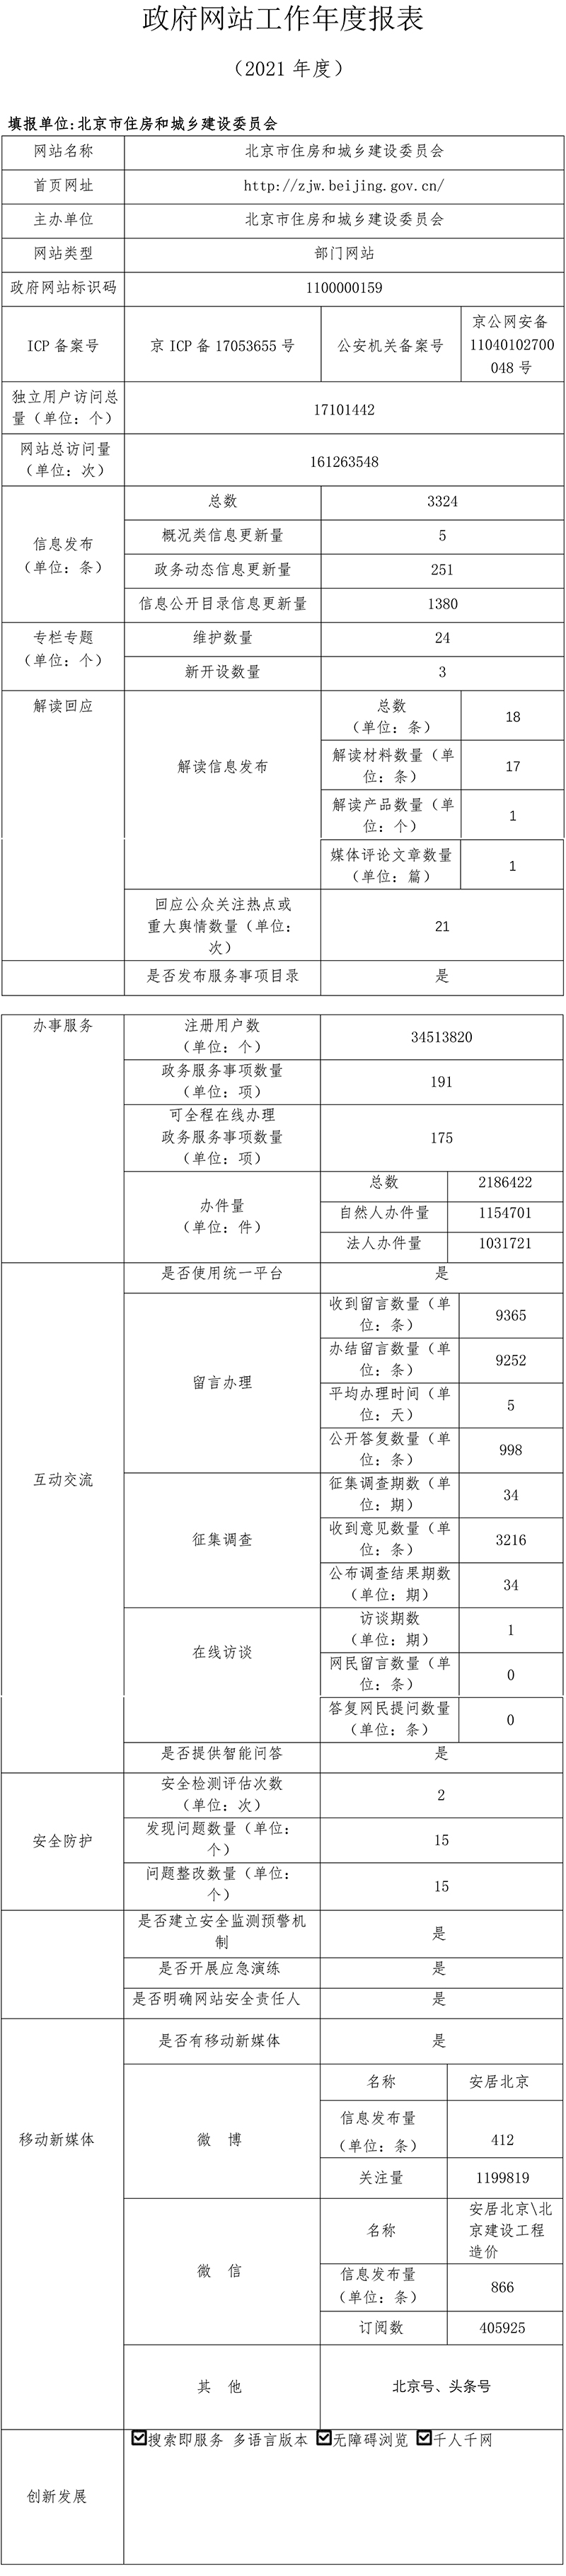 北京市住房和城鄉建設委員會2021年政府網站年度工作報表